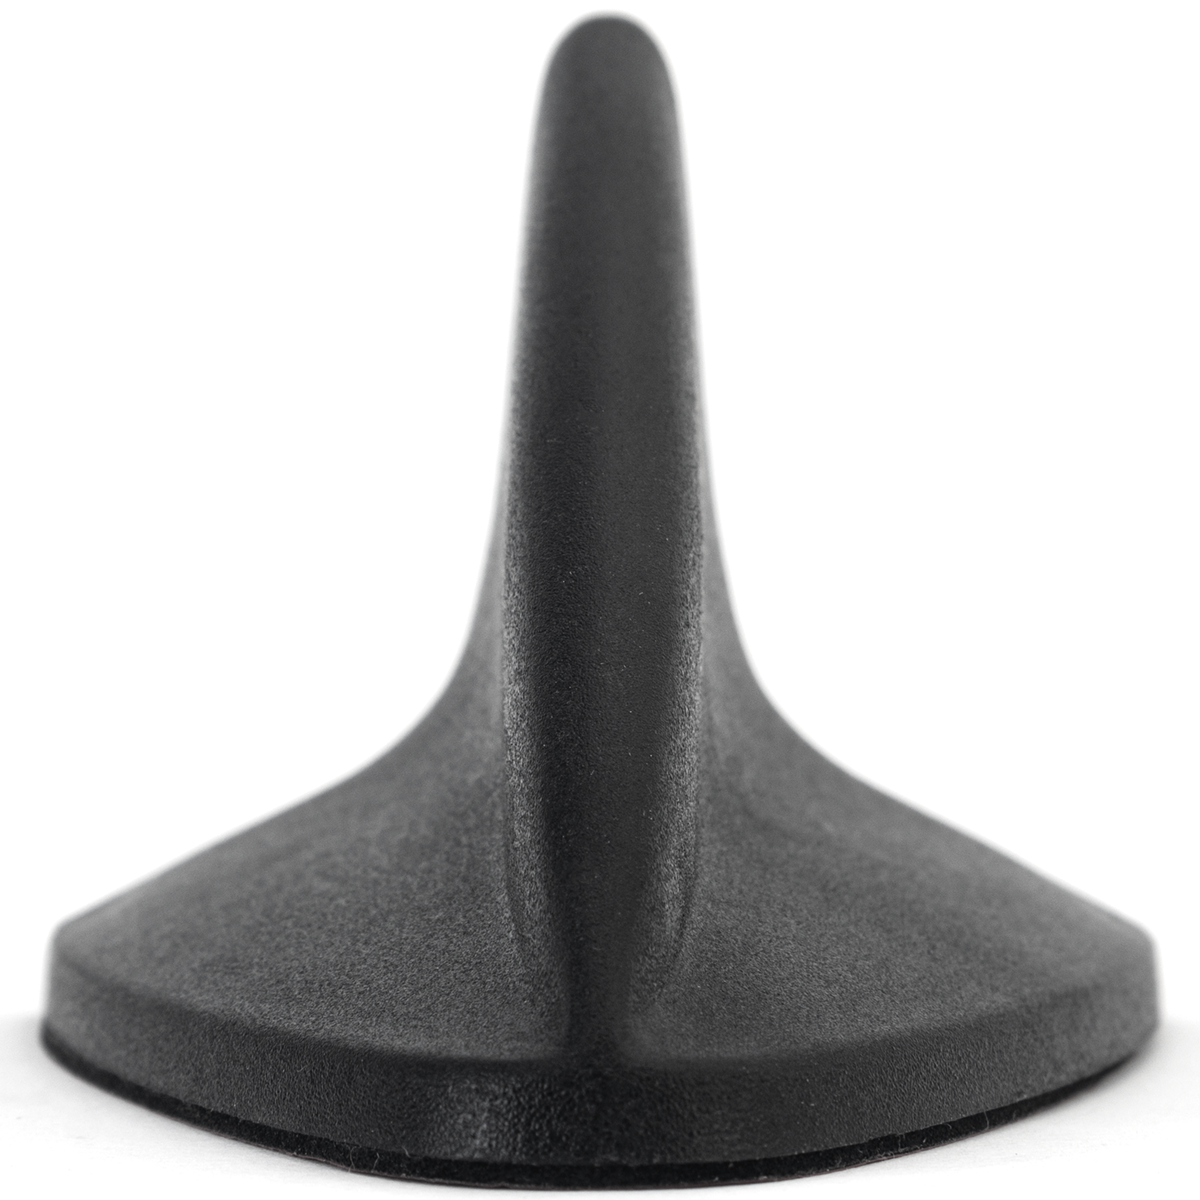 Antena de aleta de tiburón falsa para techo de coche, pegatina